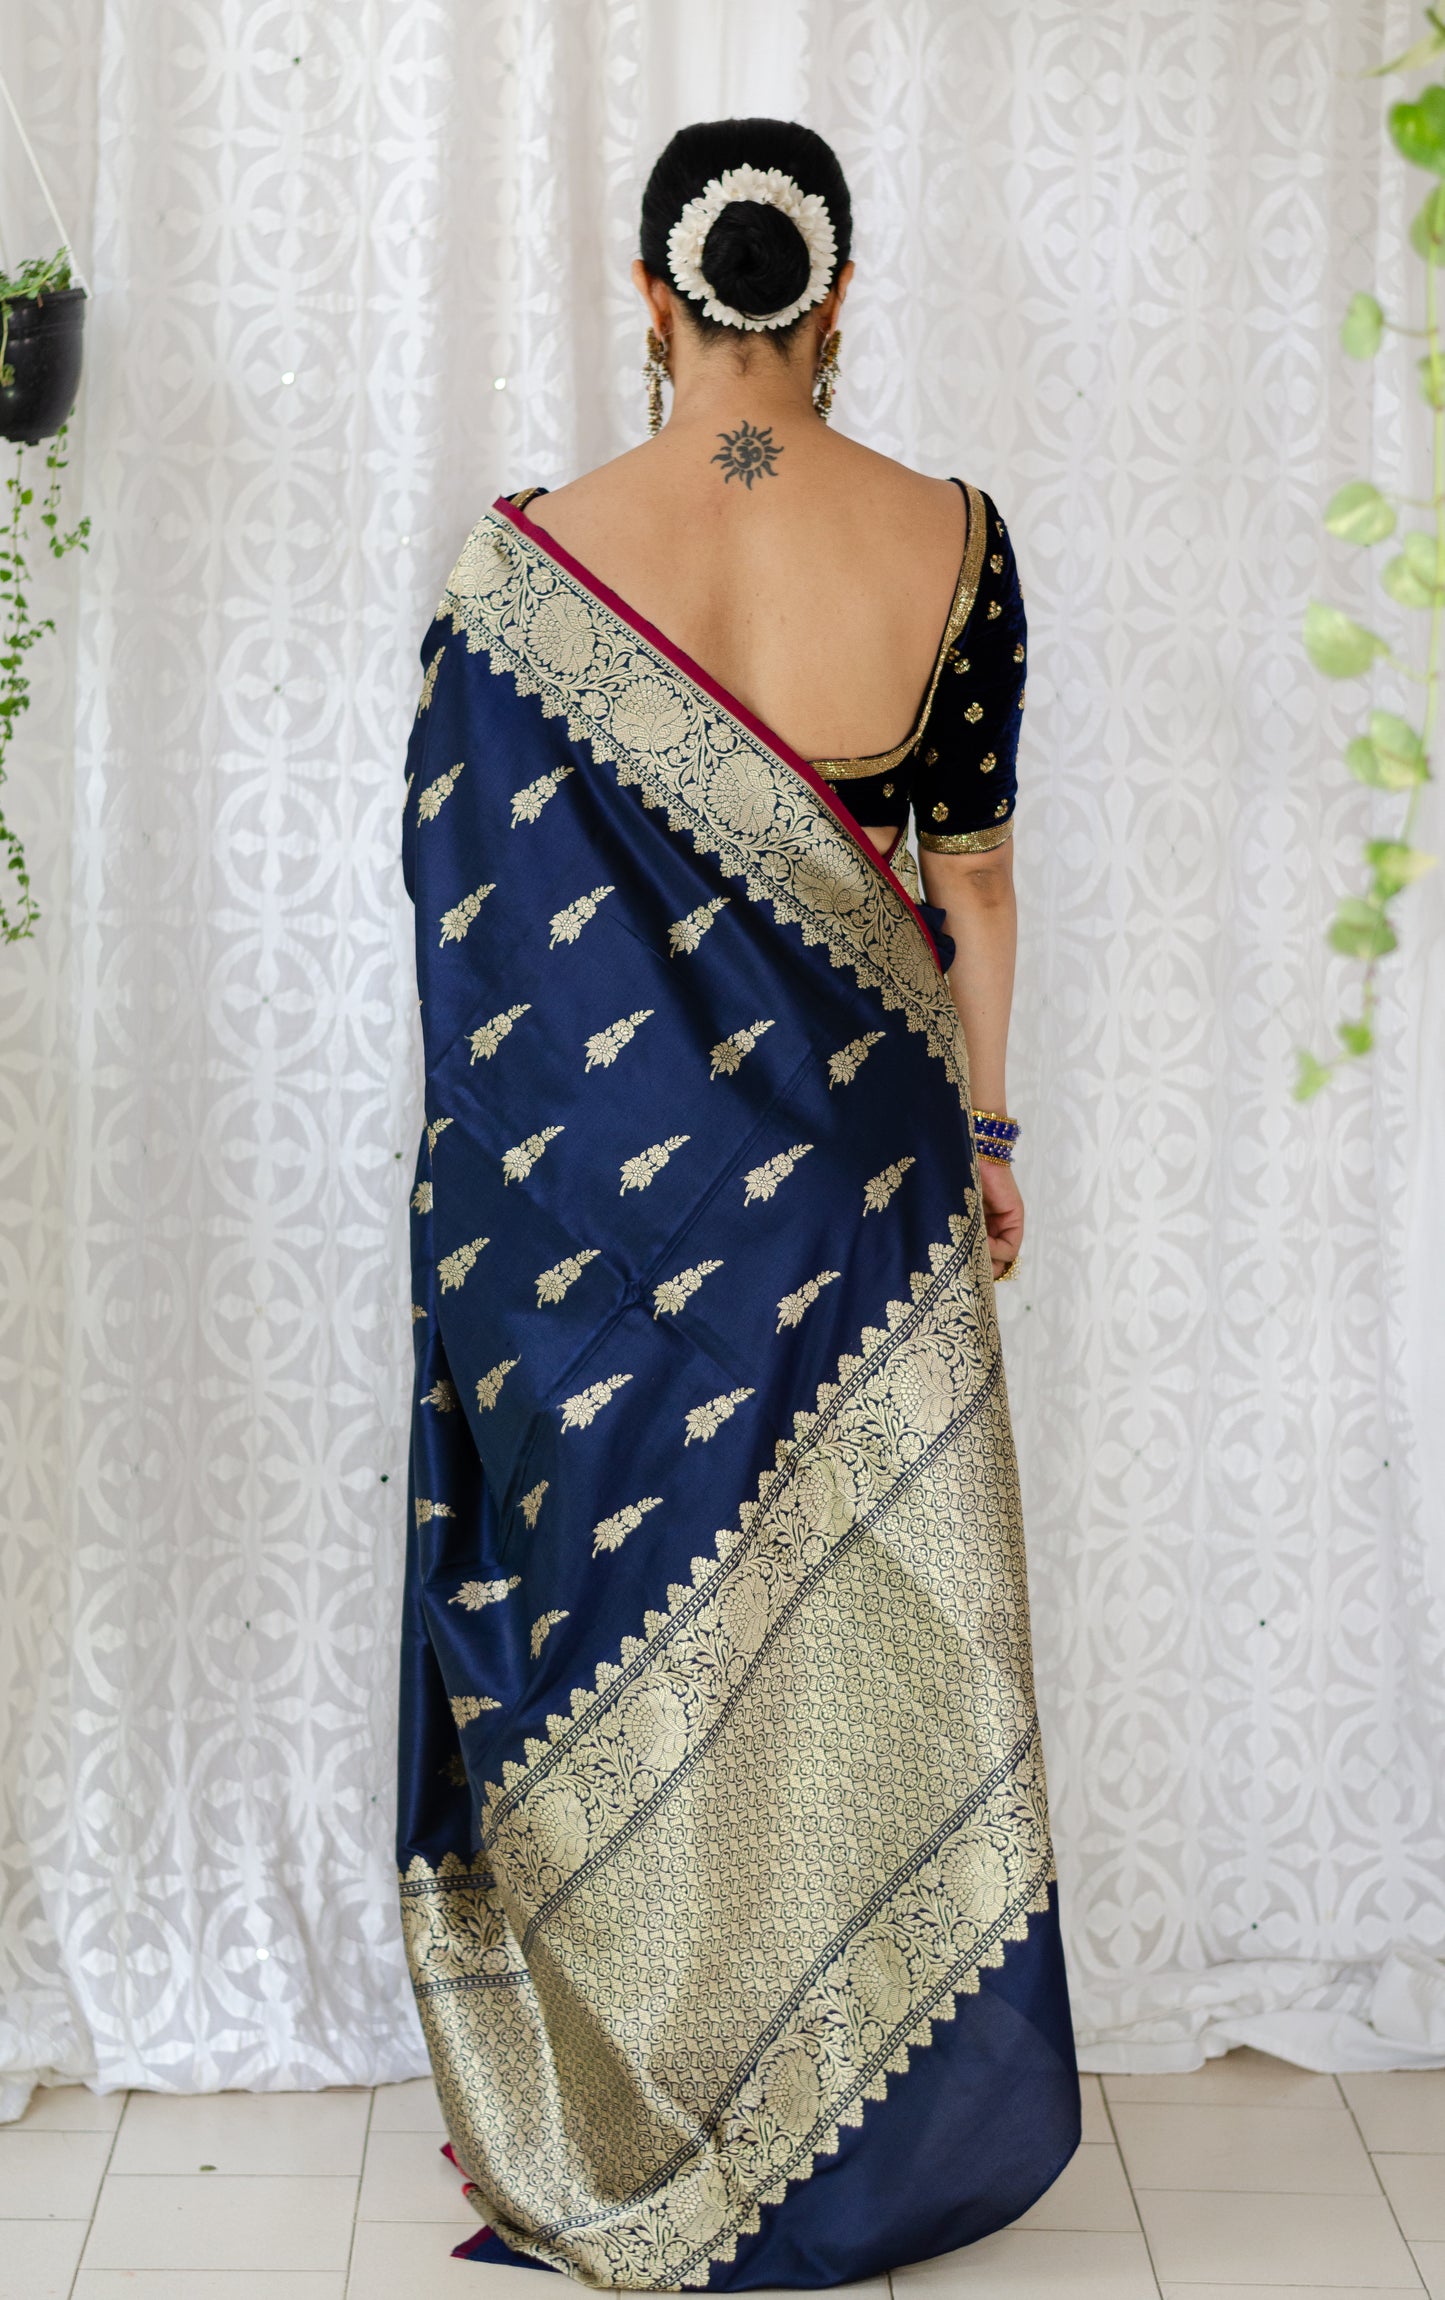 Deep Navi Bllue Colour  Meenakari /Silver Jangle /Gold  kadwa Weaving Handwoven Katan Mulbery Silk Saree